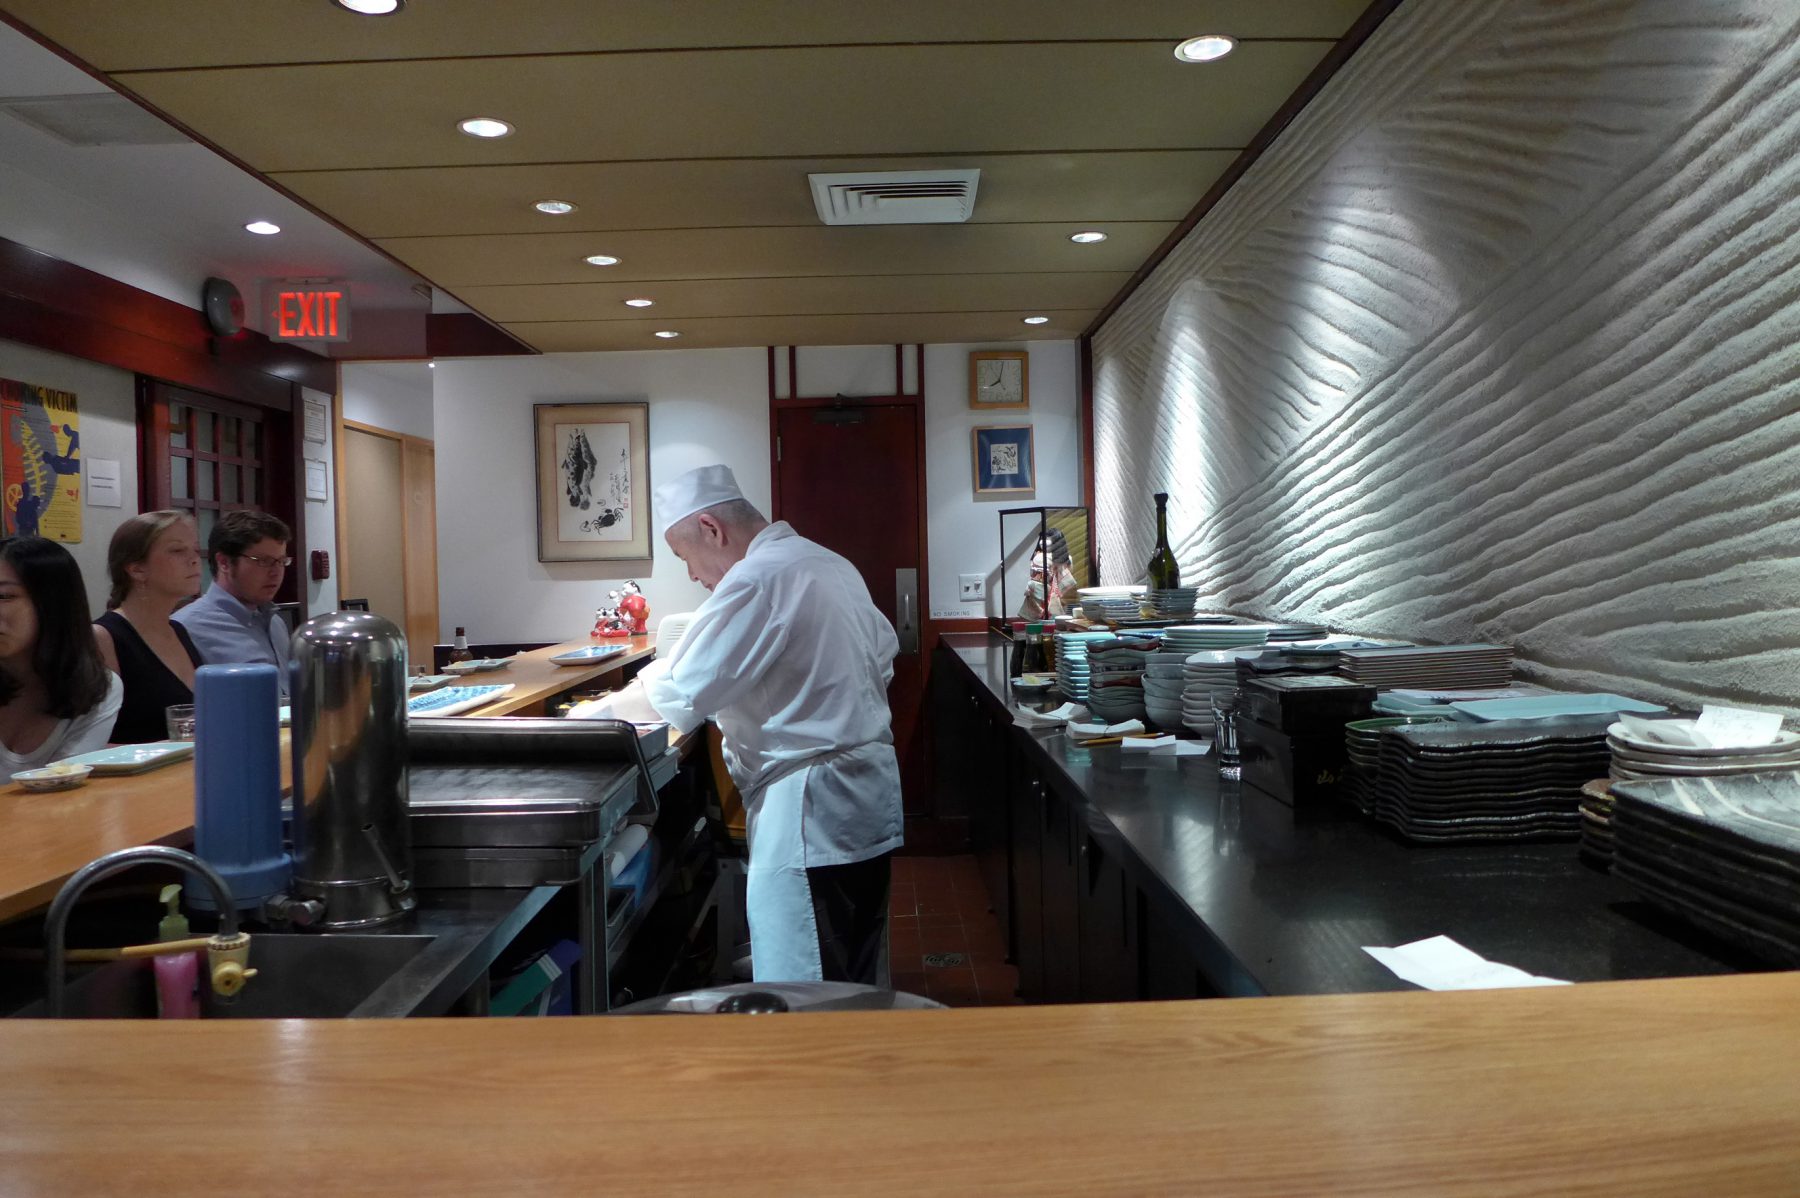 Kurumazushi interior and chef